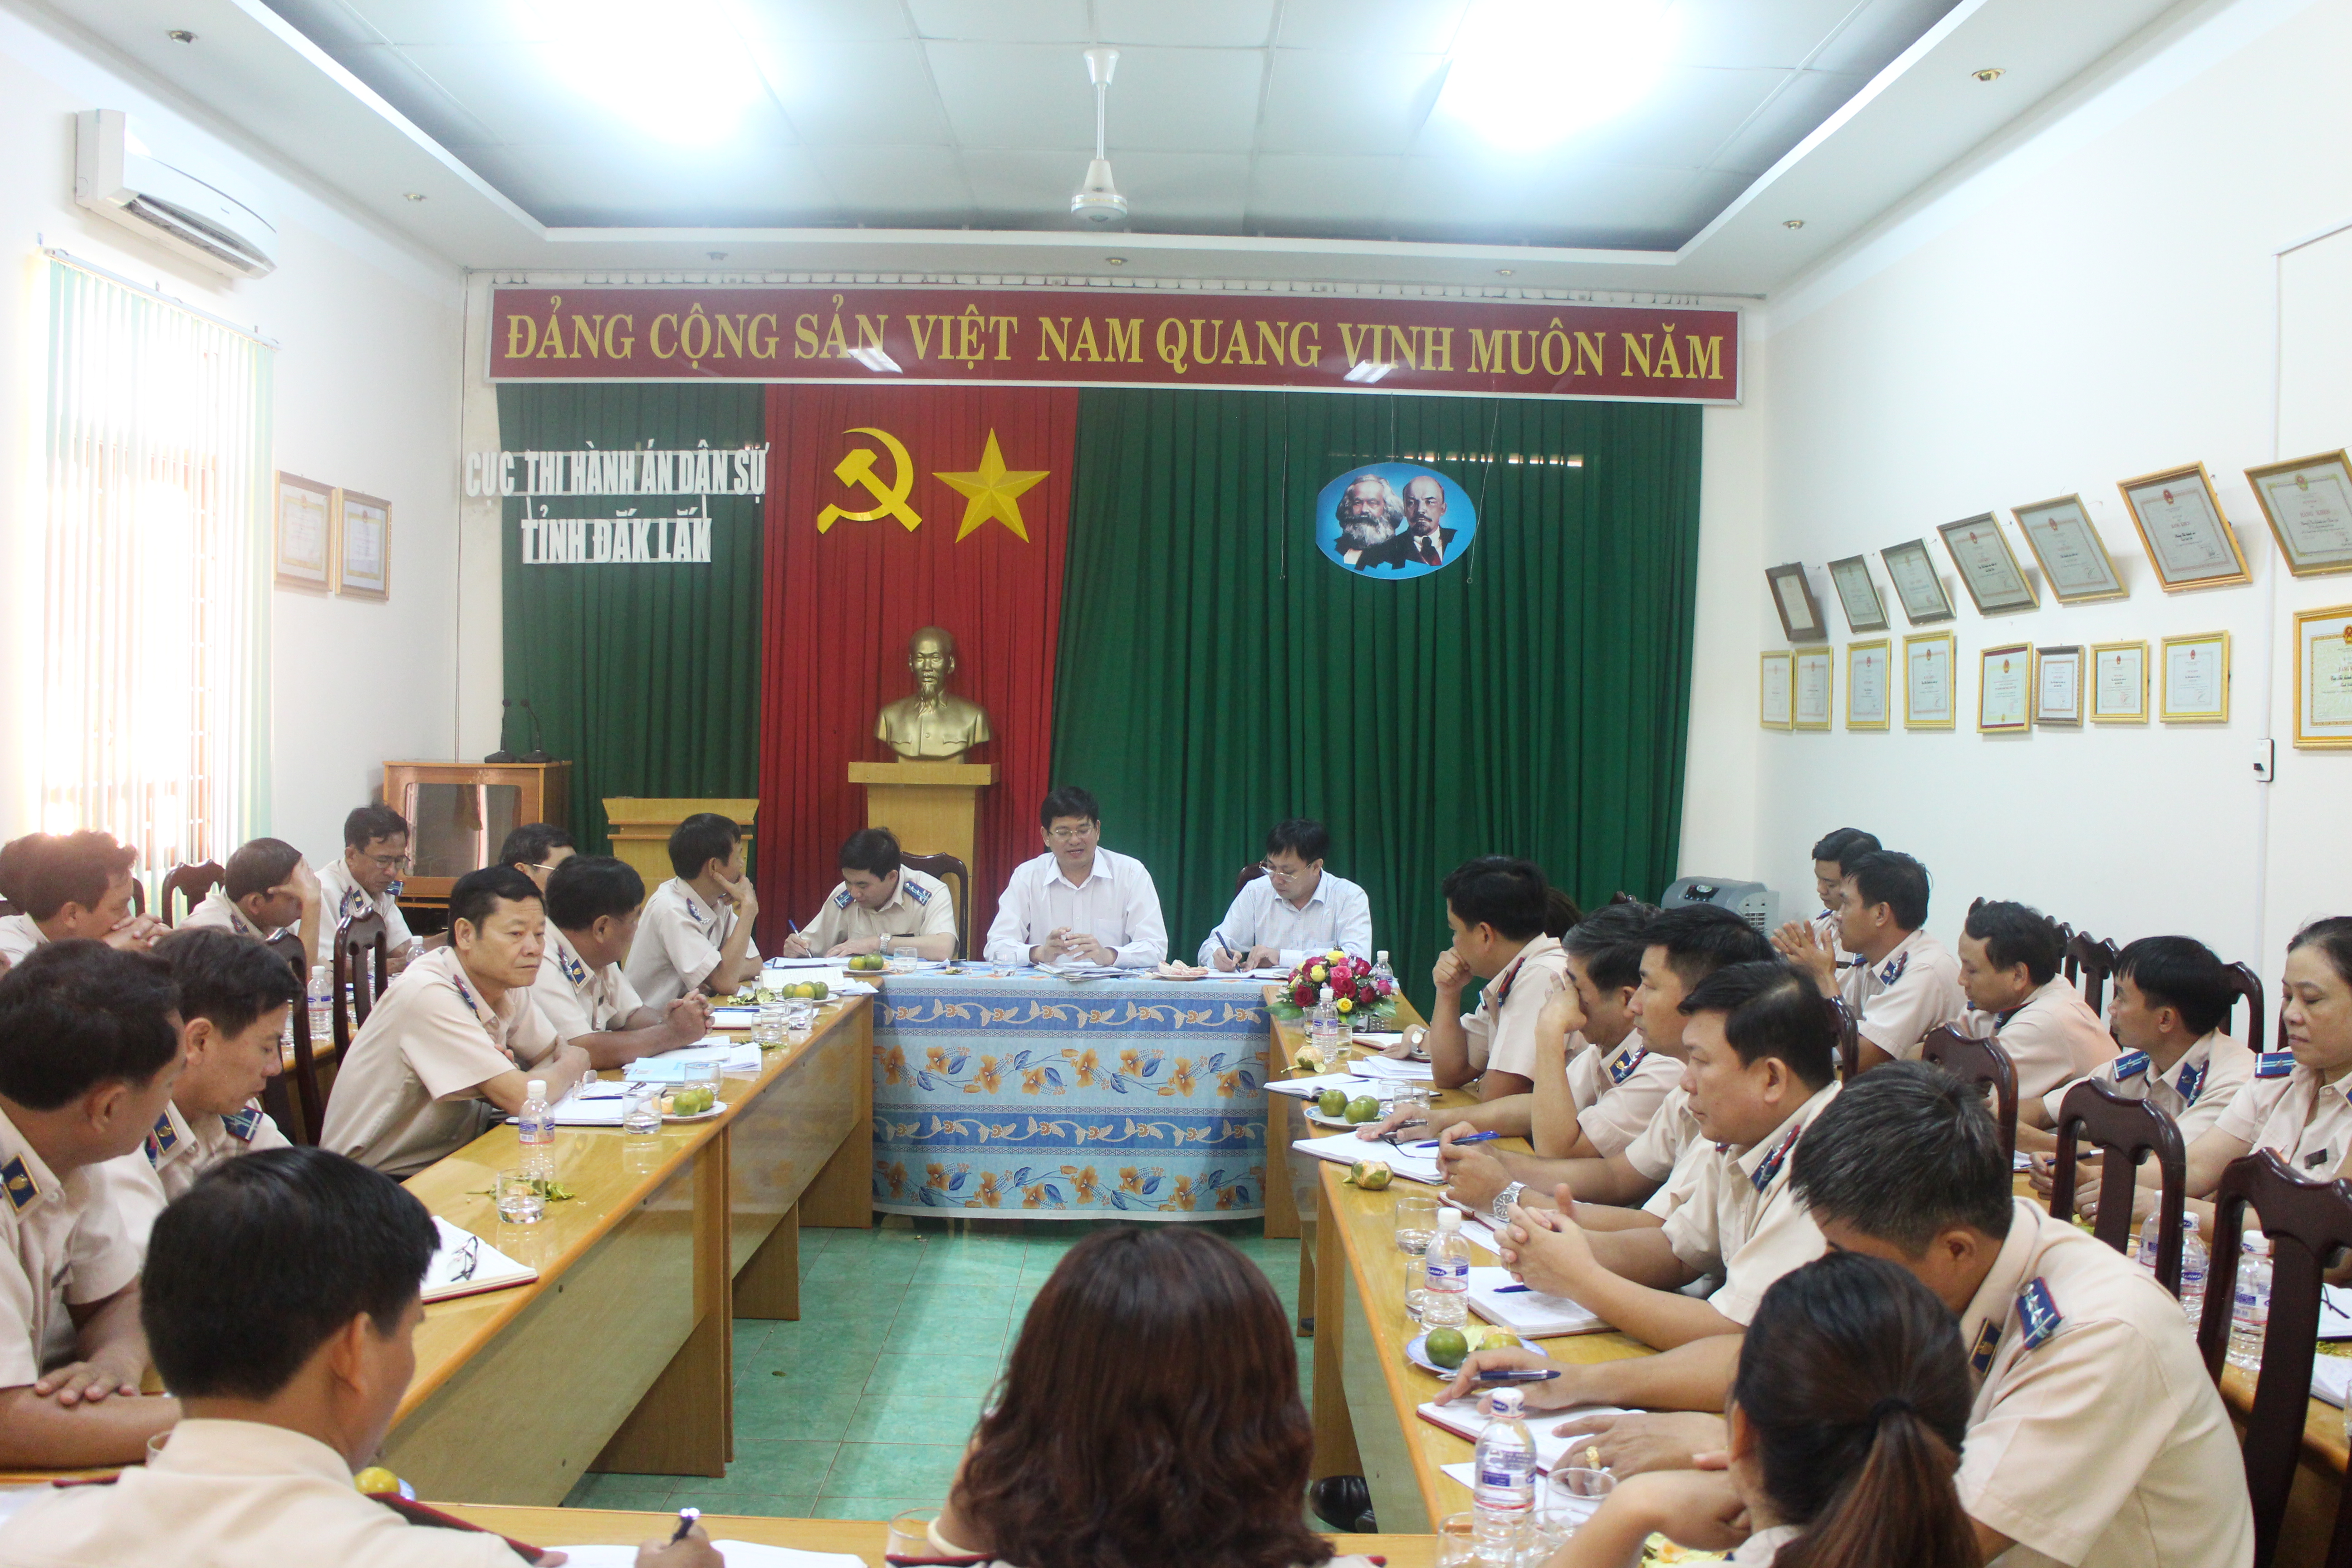 Phó tổng cục trưởng Nguyễn Văn Lực và Đoàn công tác của Tổng cục Thi hành án dân sự làm việc tại Cục Thi hành án dân sự tỉnh Đắk Lắk